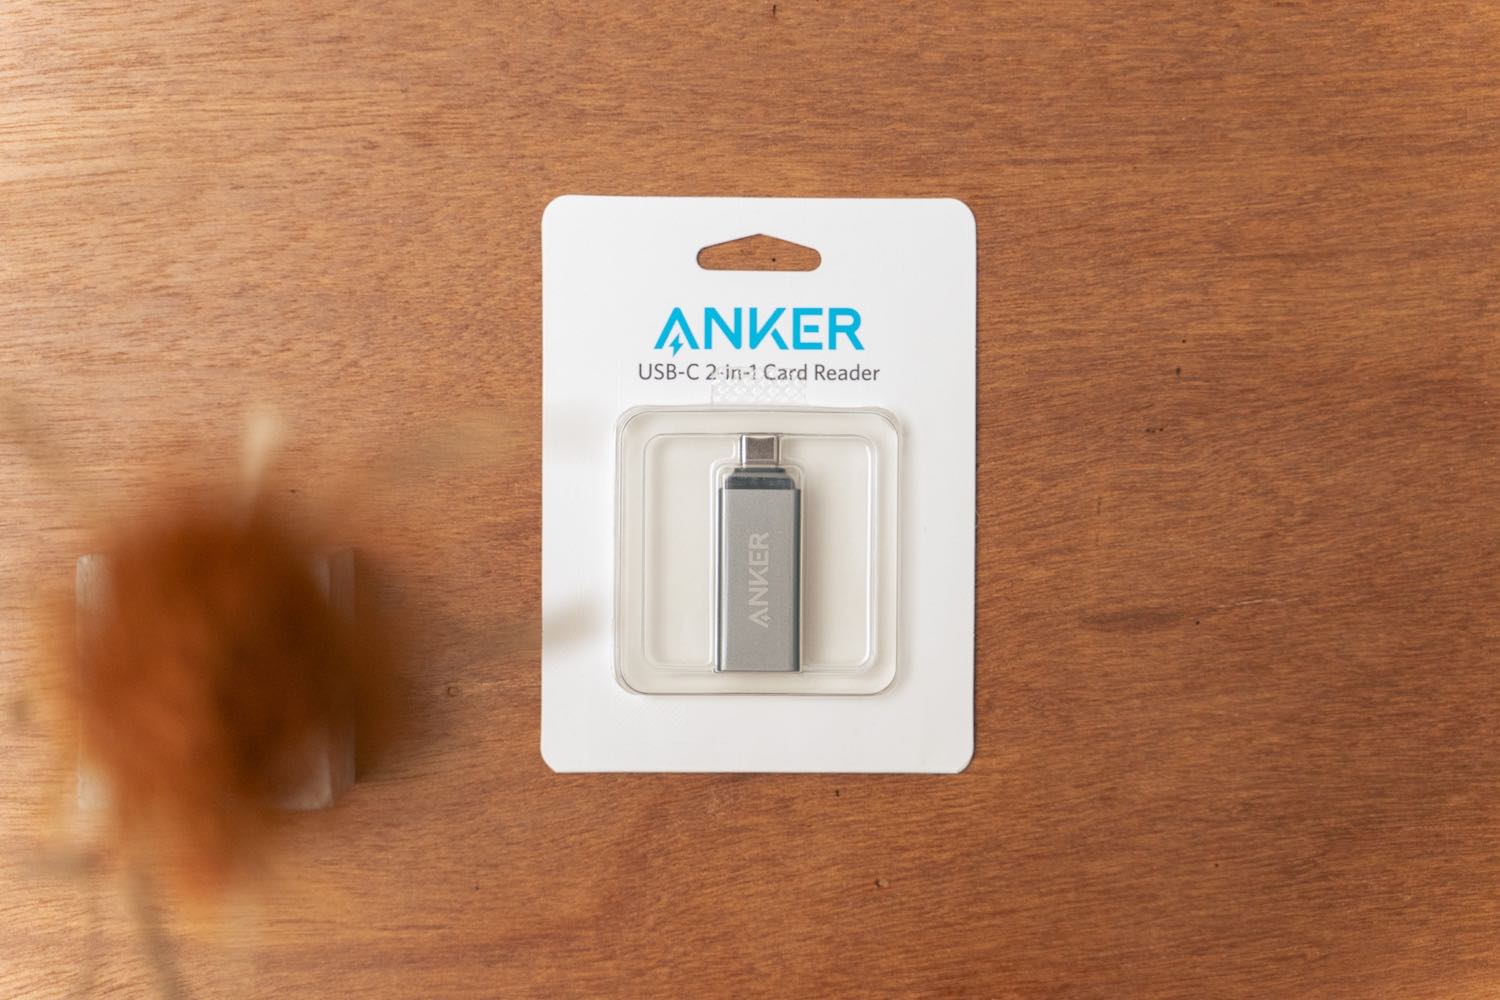 『Anker USB-C 2in1 カードリーダー』のパッケージ。